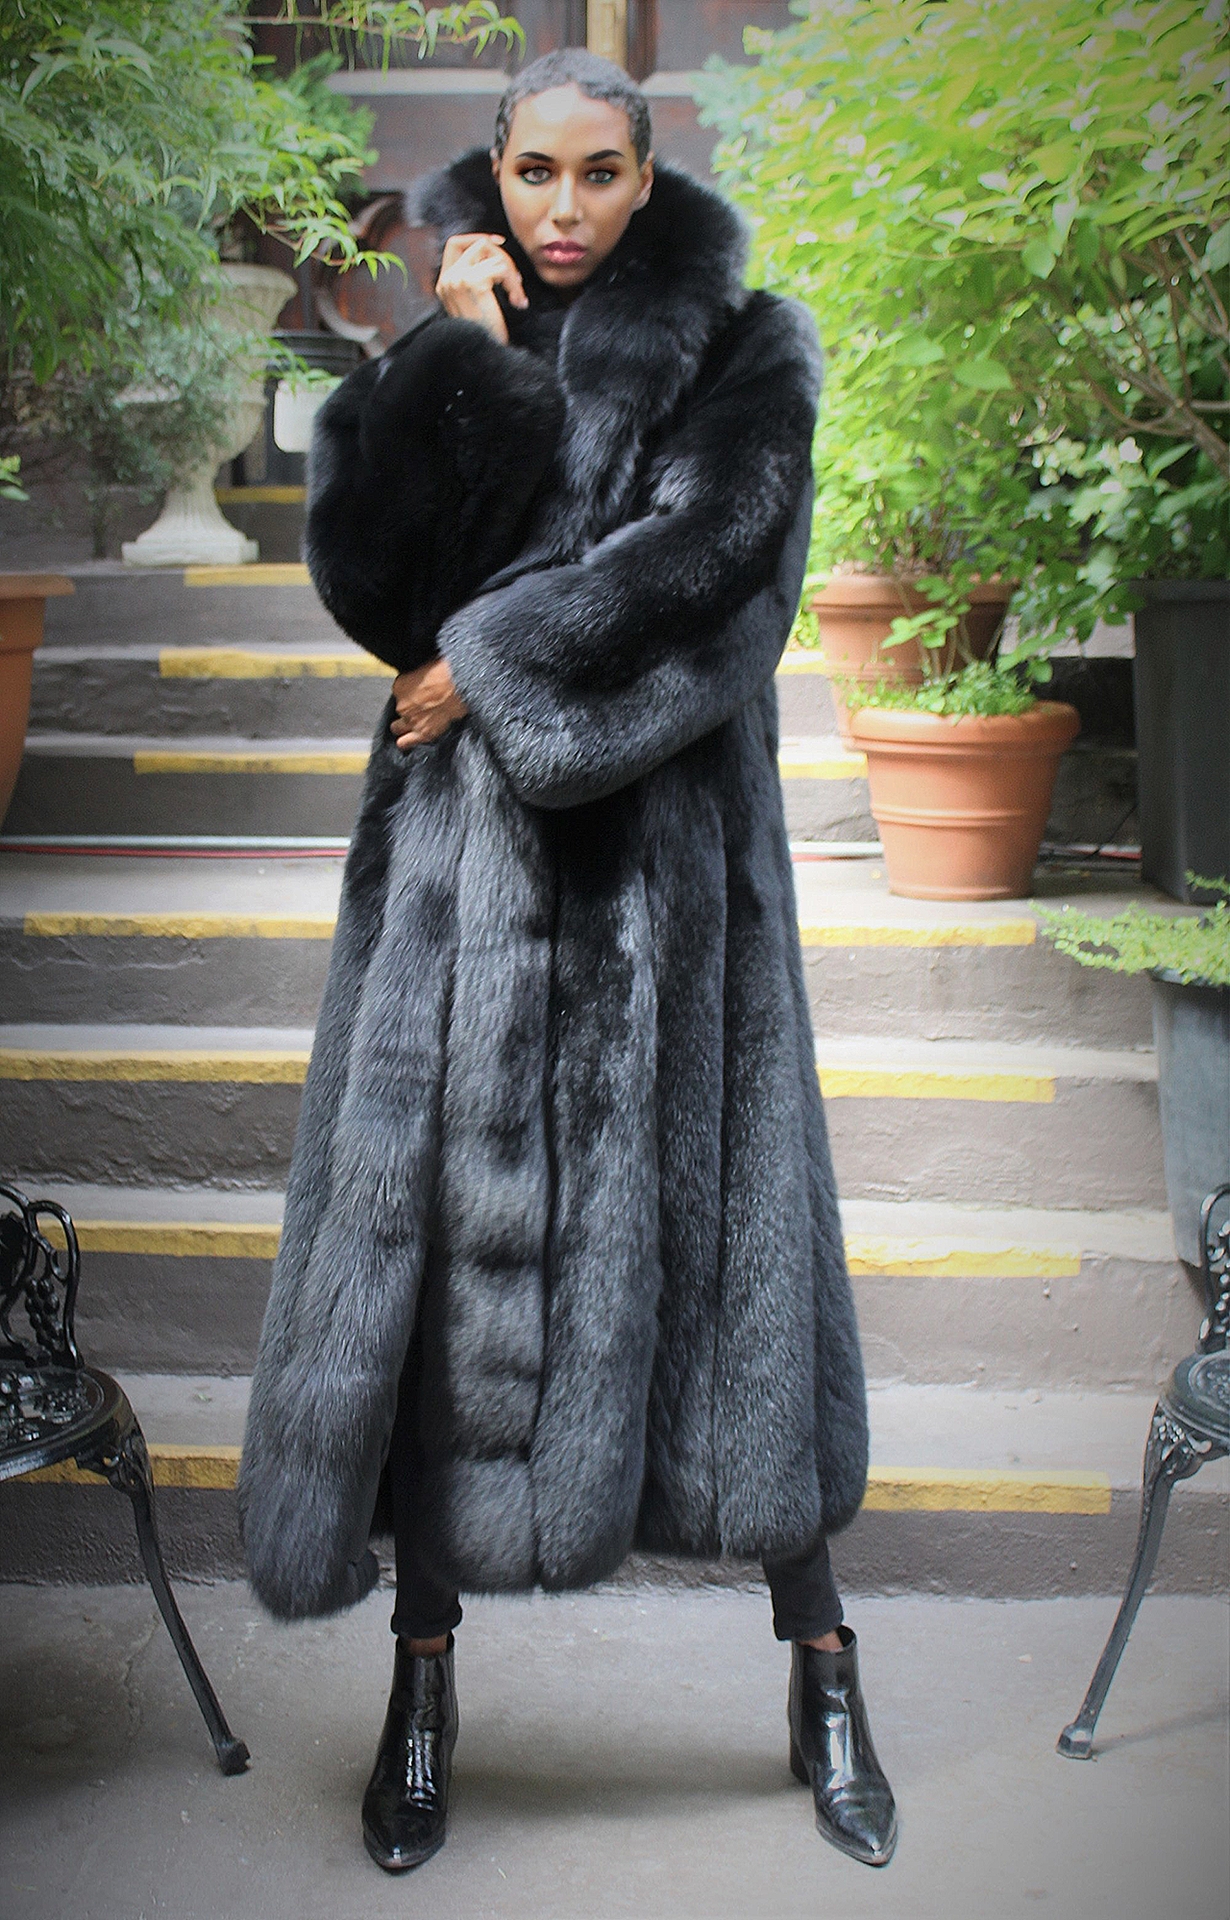 Black Fox Coat Full Length 77287 Marc, Long Black Fox Fur Coat